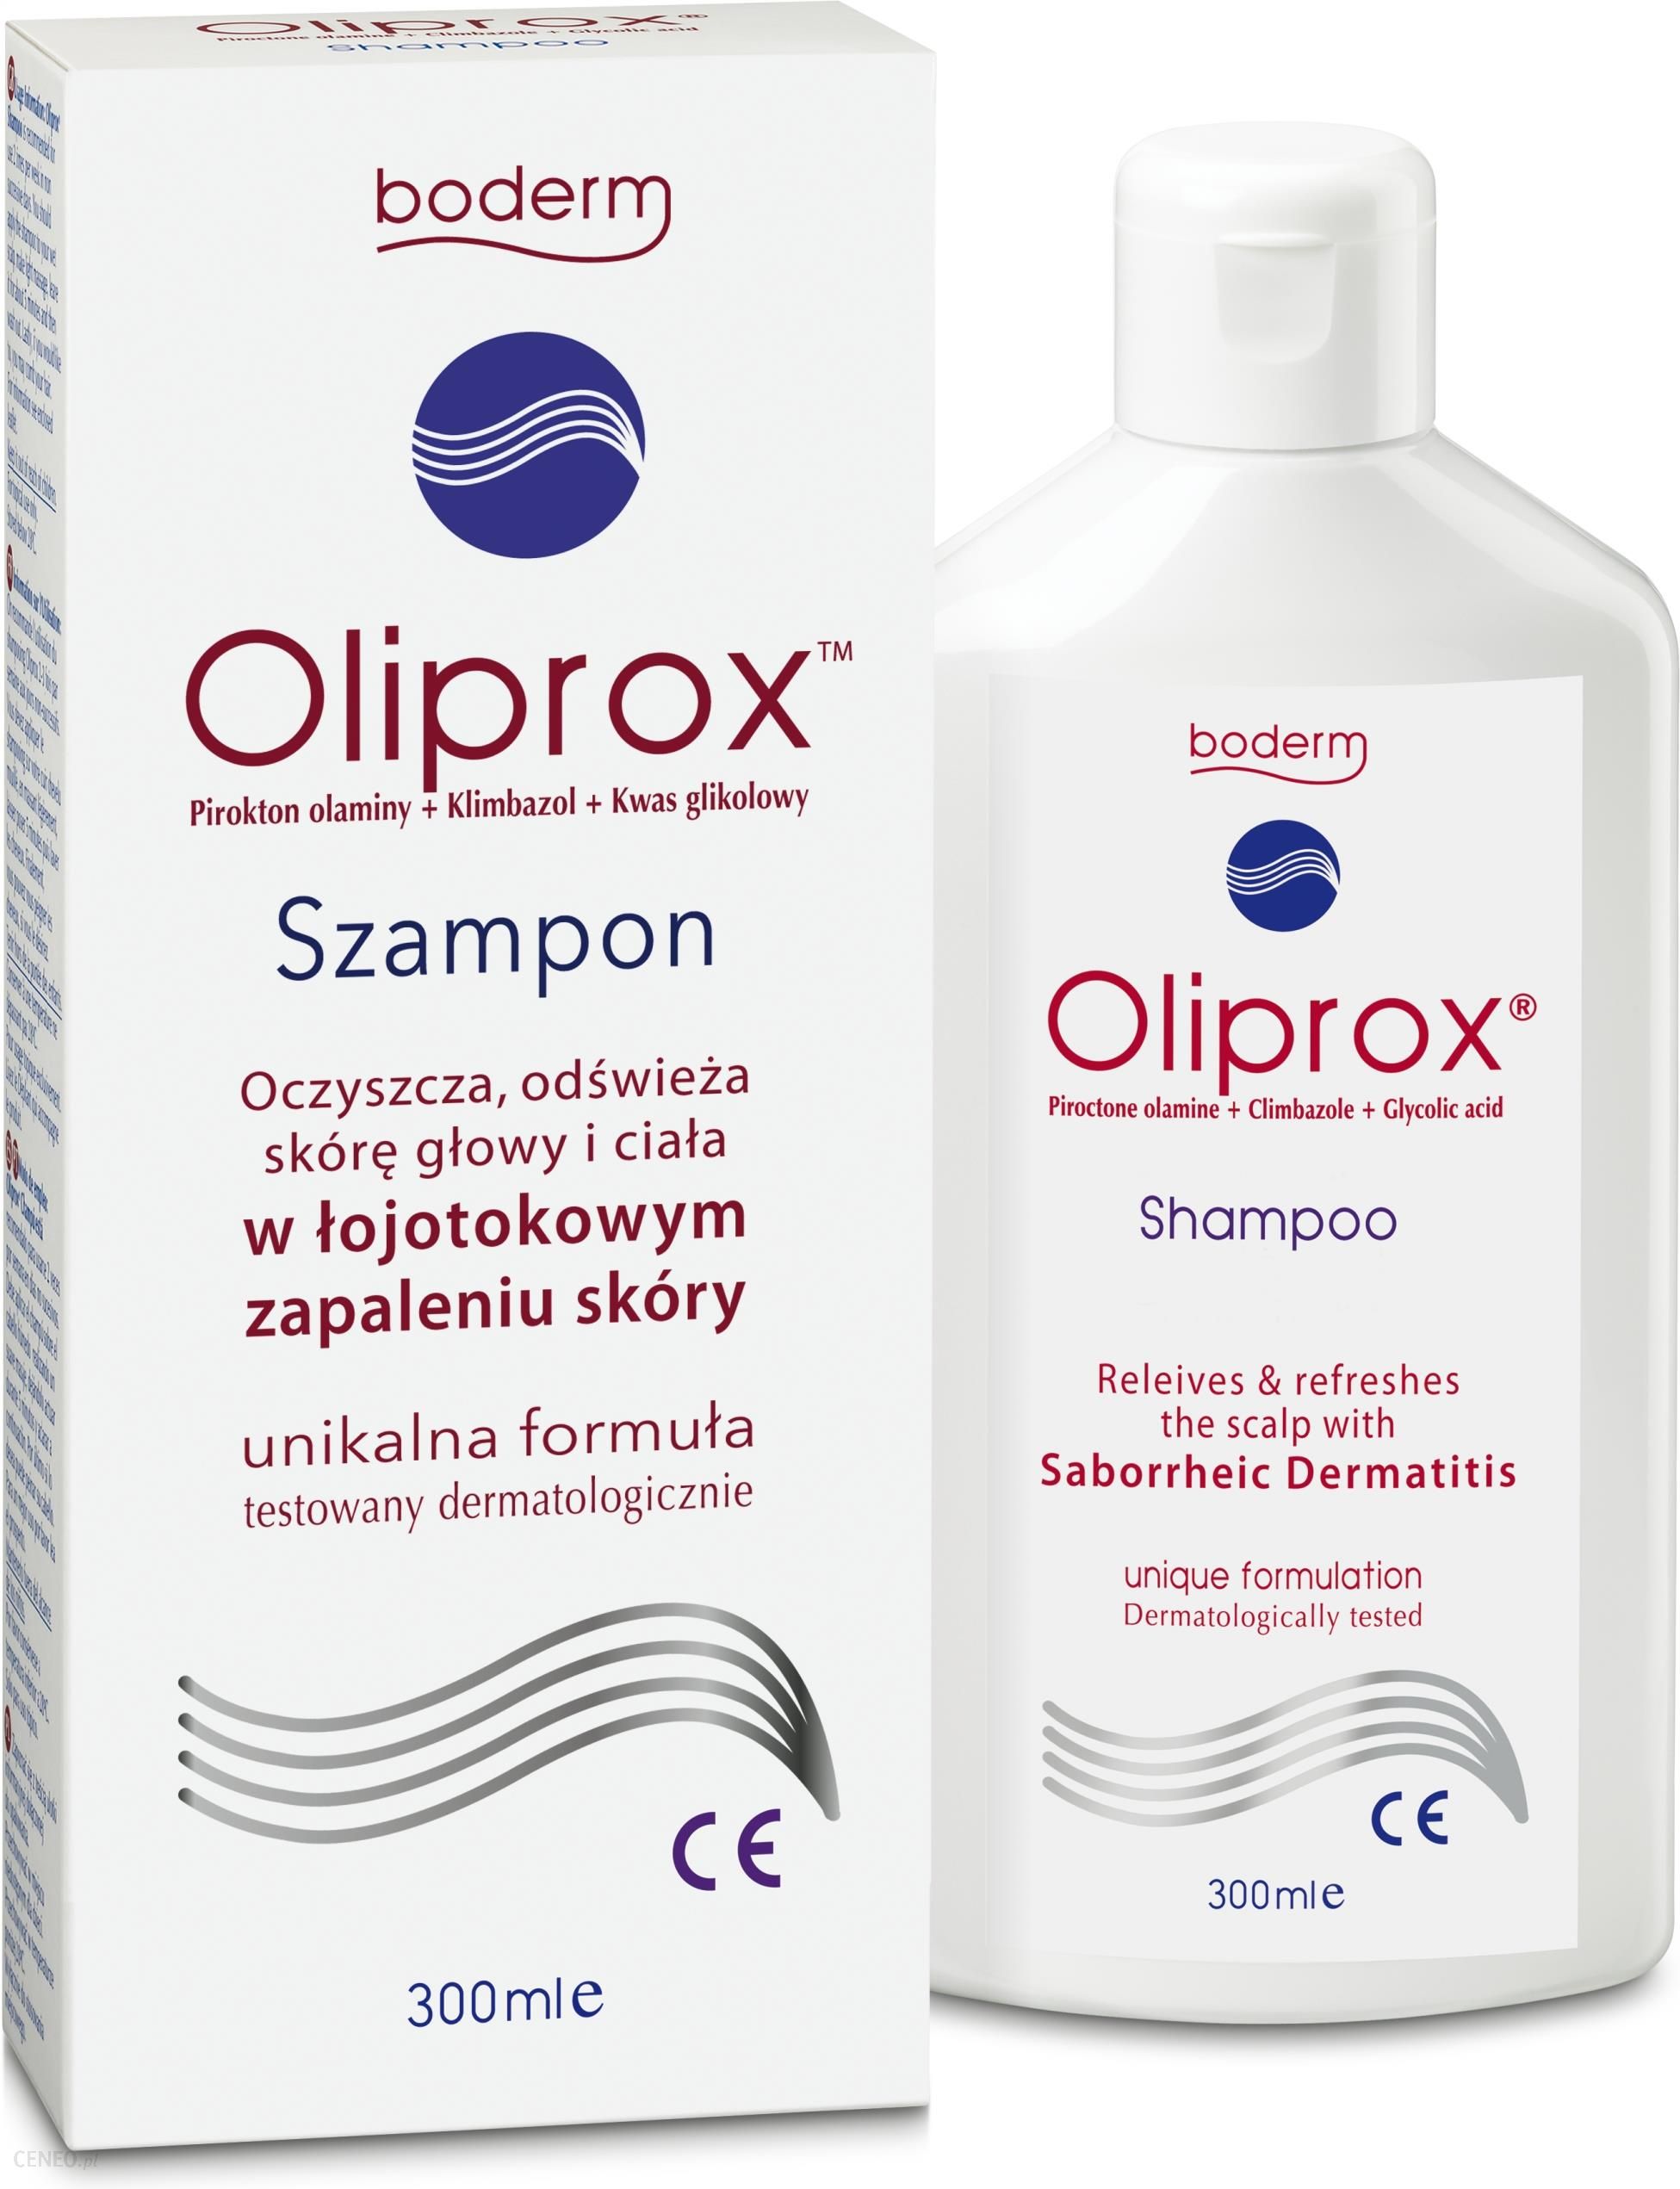 oliprox szampon zamiennik